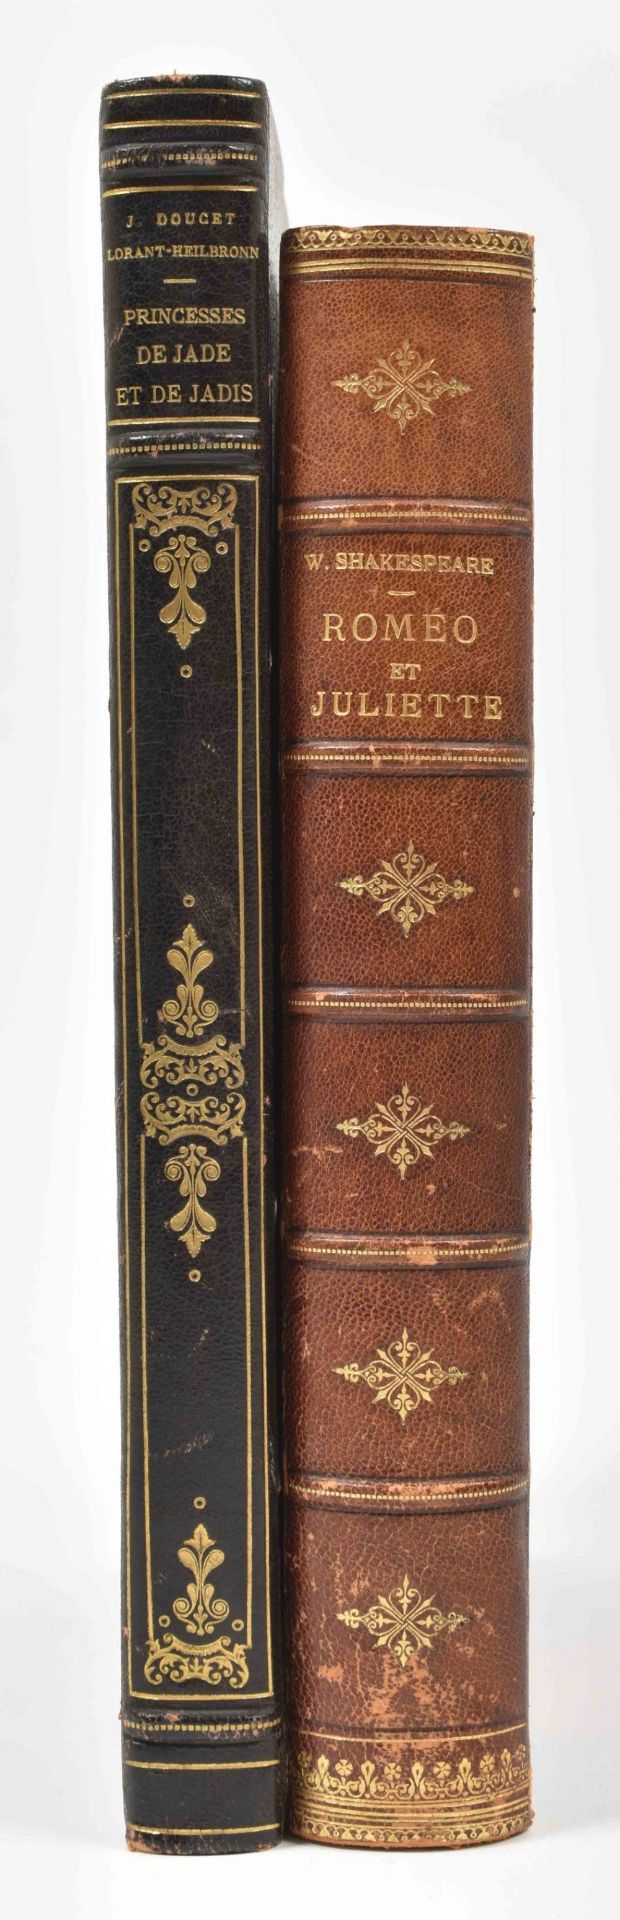 Two French vols.: Jerome Doucet. Princesses de Jade et de Jadis